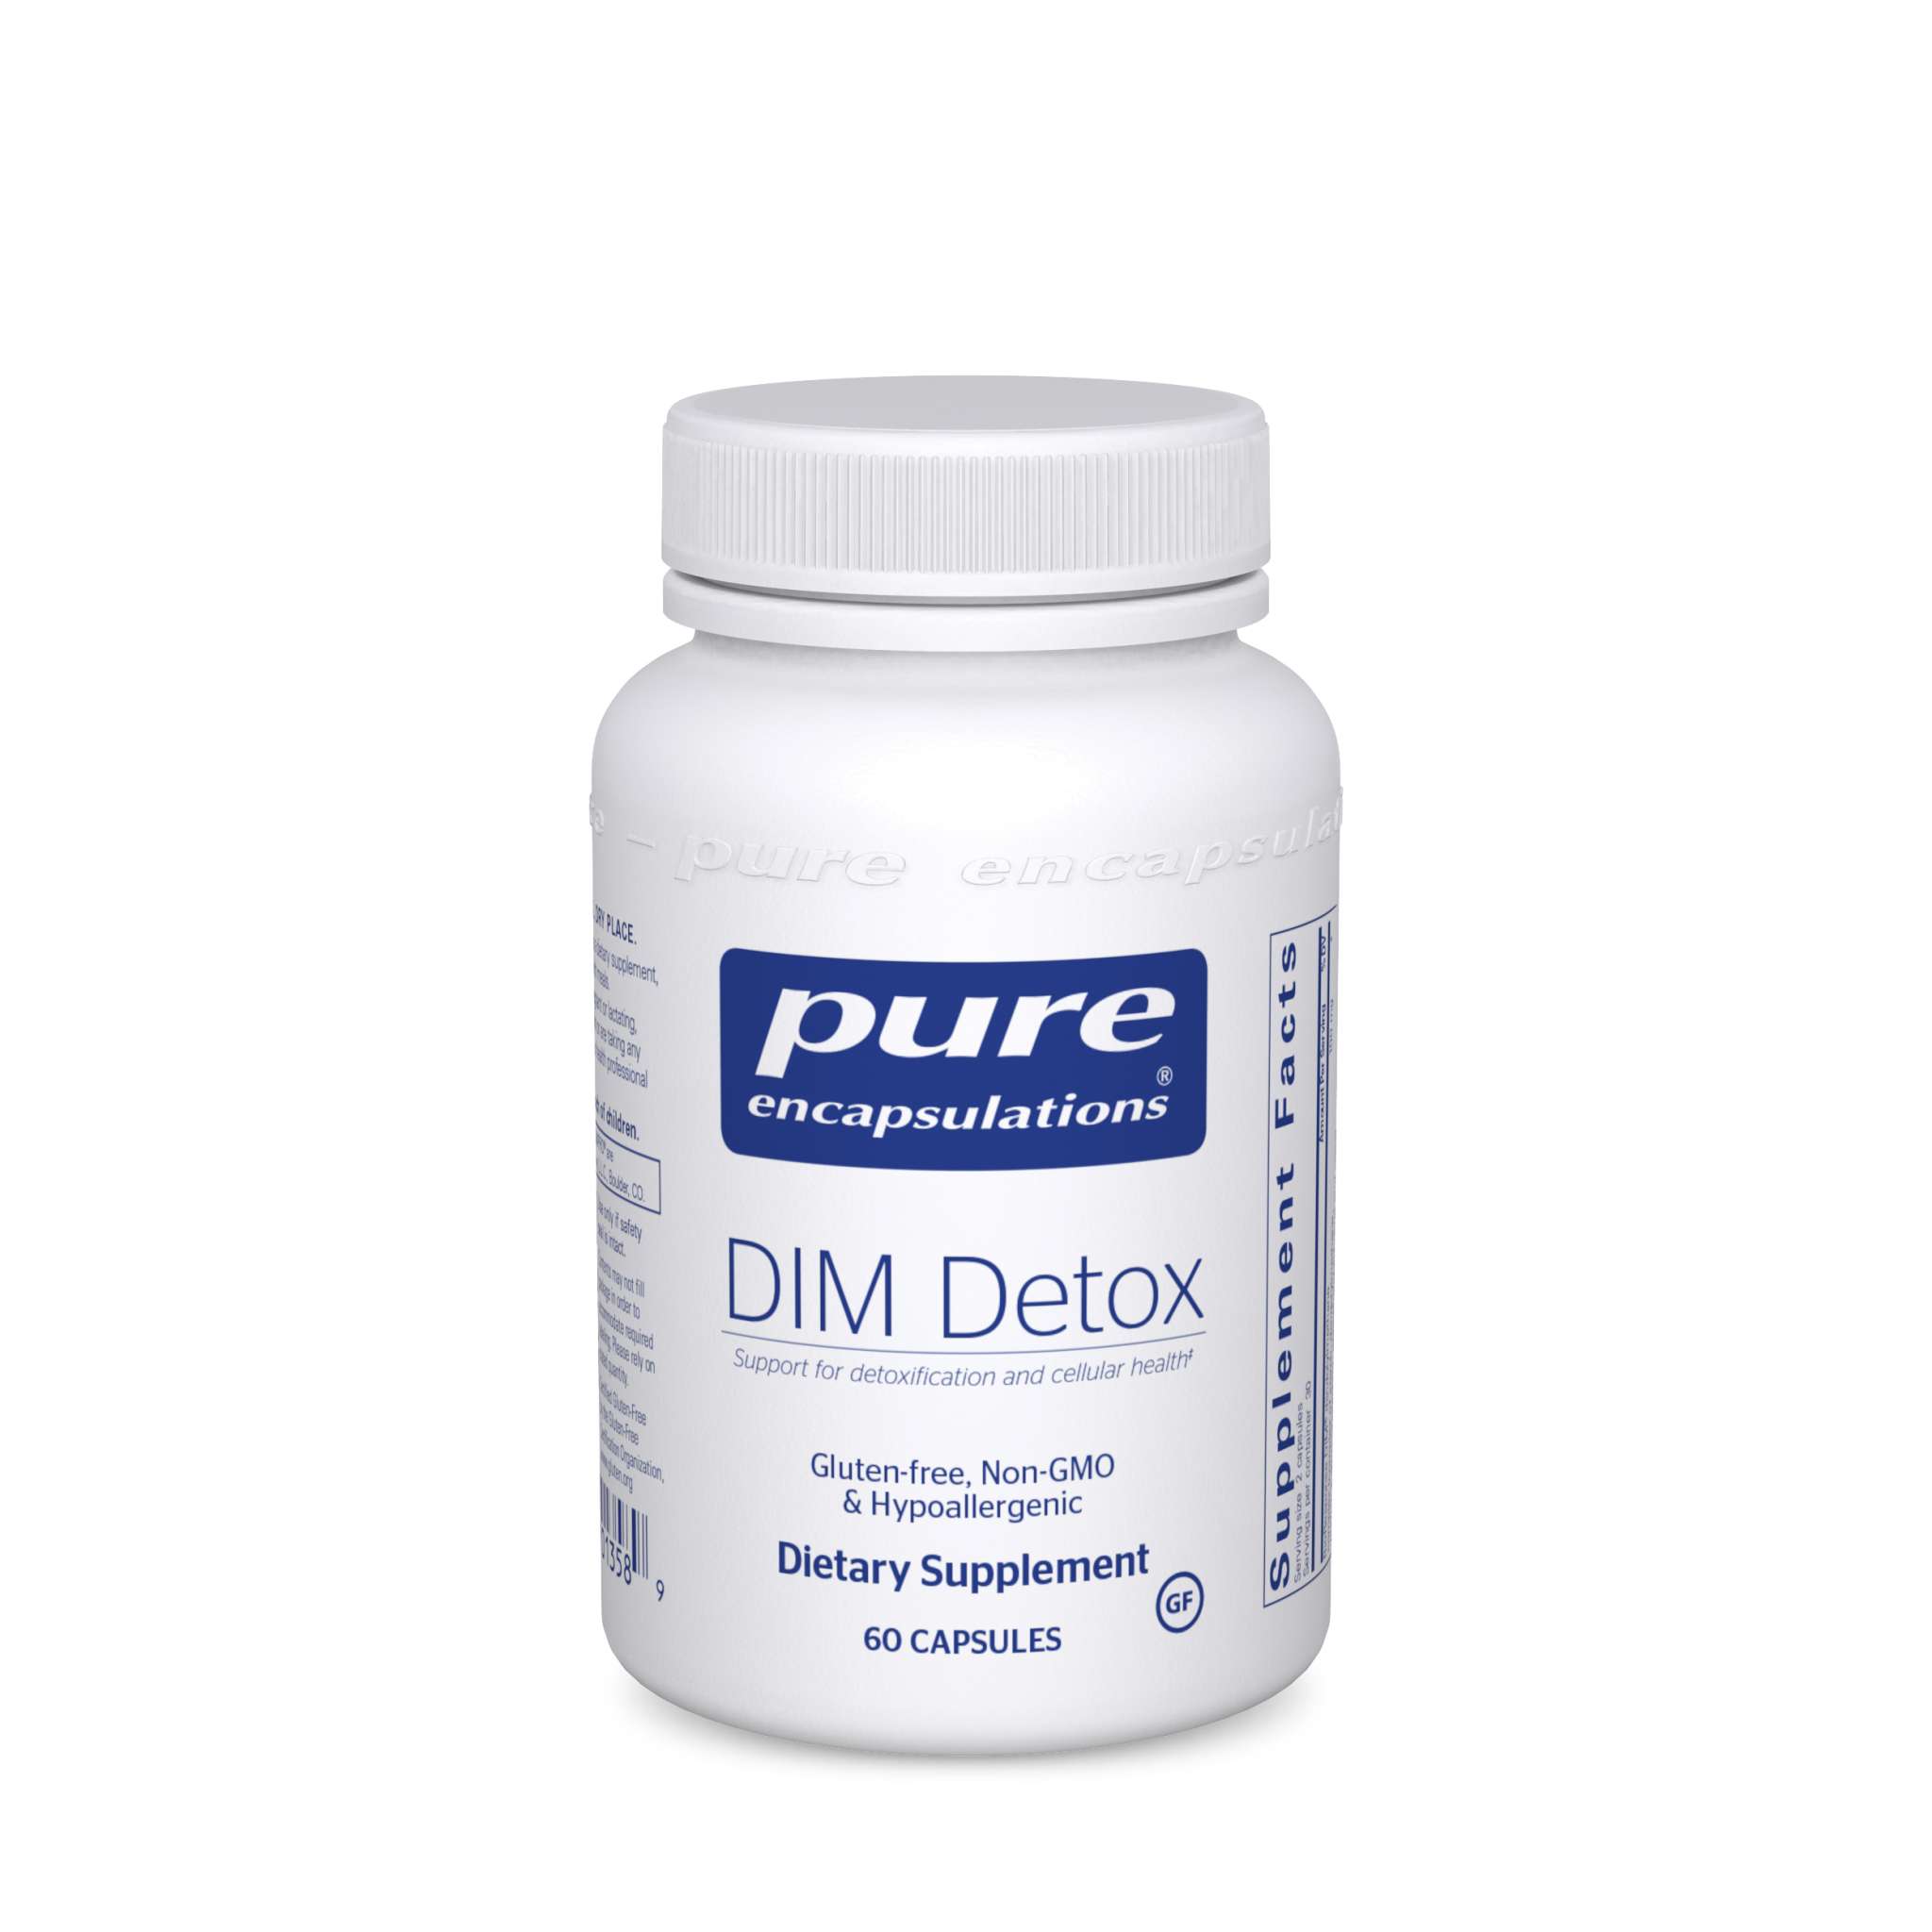 Pure Encapsulations - Dim Detox